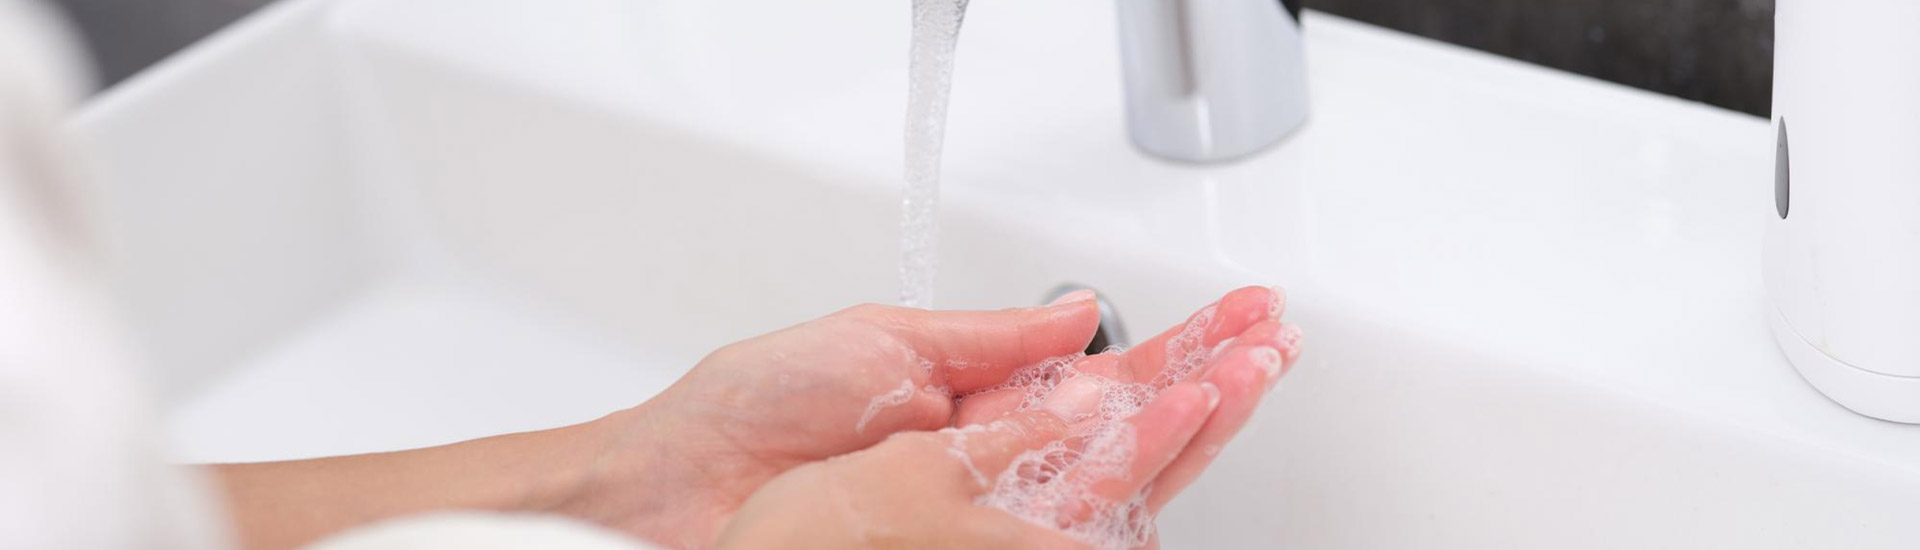 Yumuşak su ile elini yıkayan kadın su yumuşatma cihazı